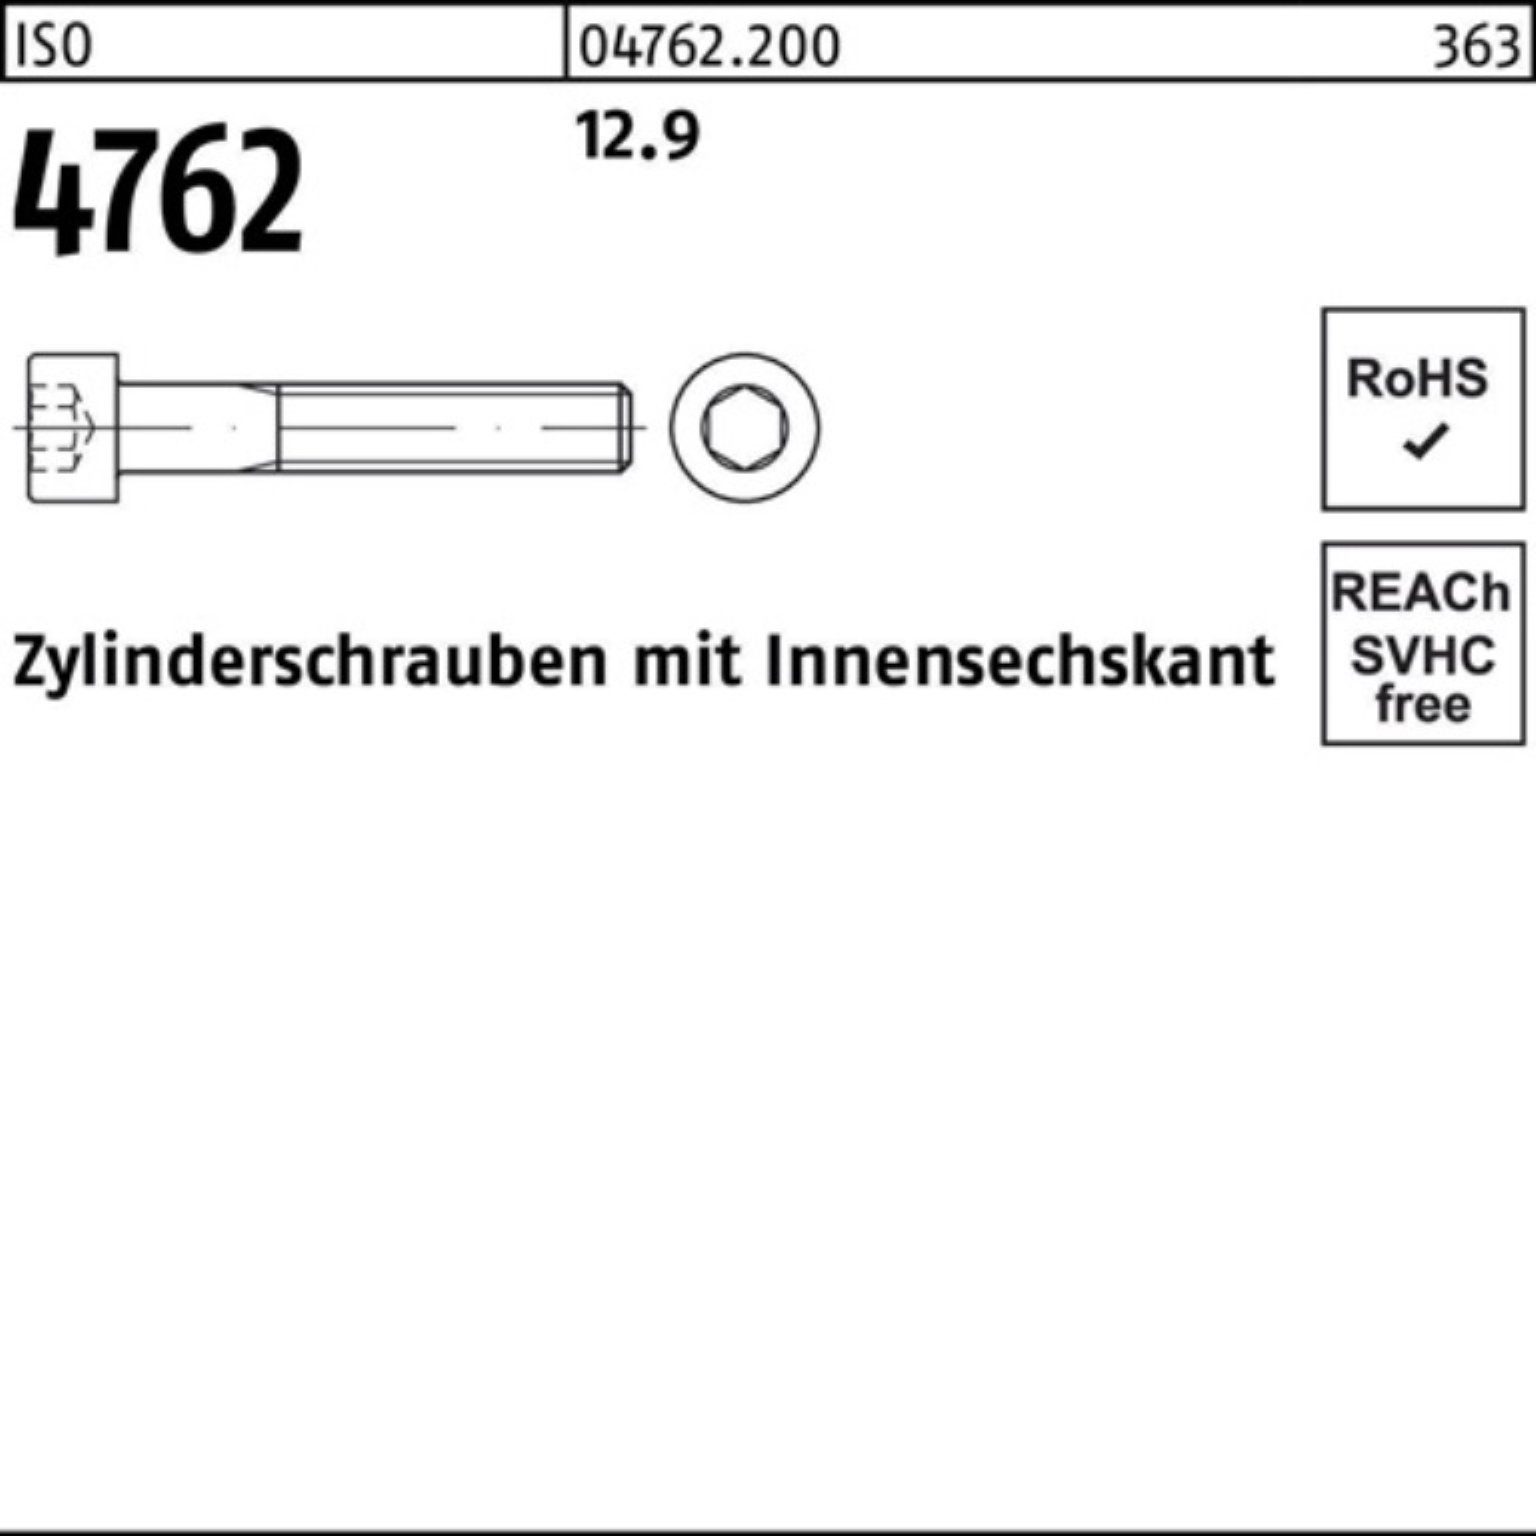 5 Zylinderschraube Zylinderschraube Innen-6kt Pack M3x I 500 500er 12.9 ISO 4762 Stück Reyher